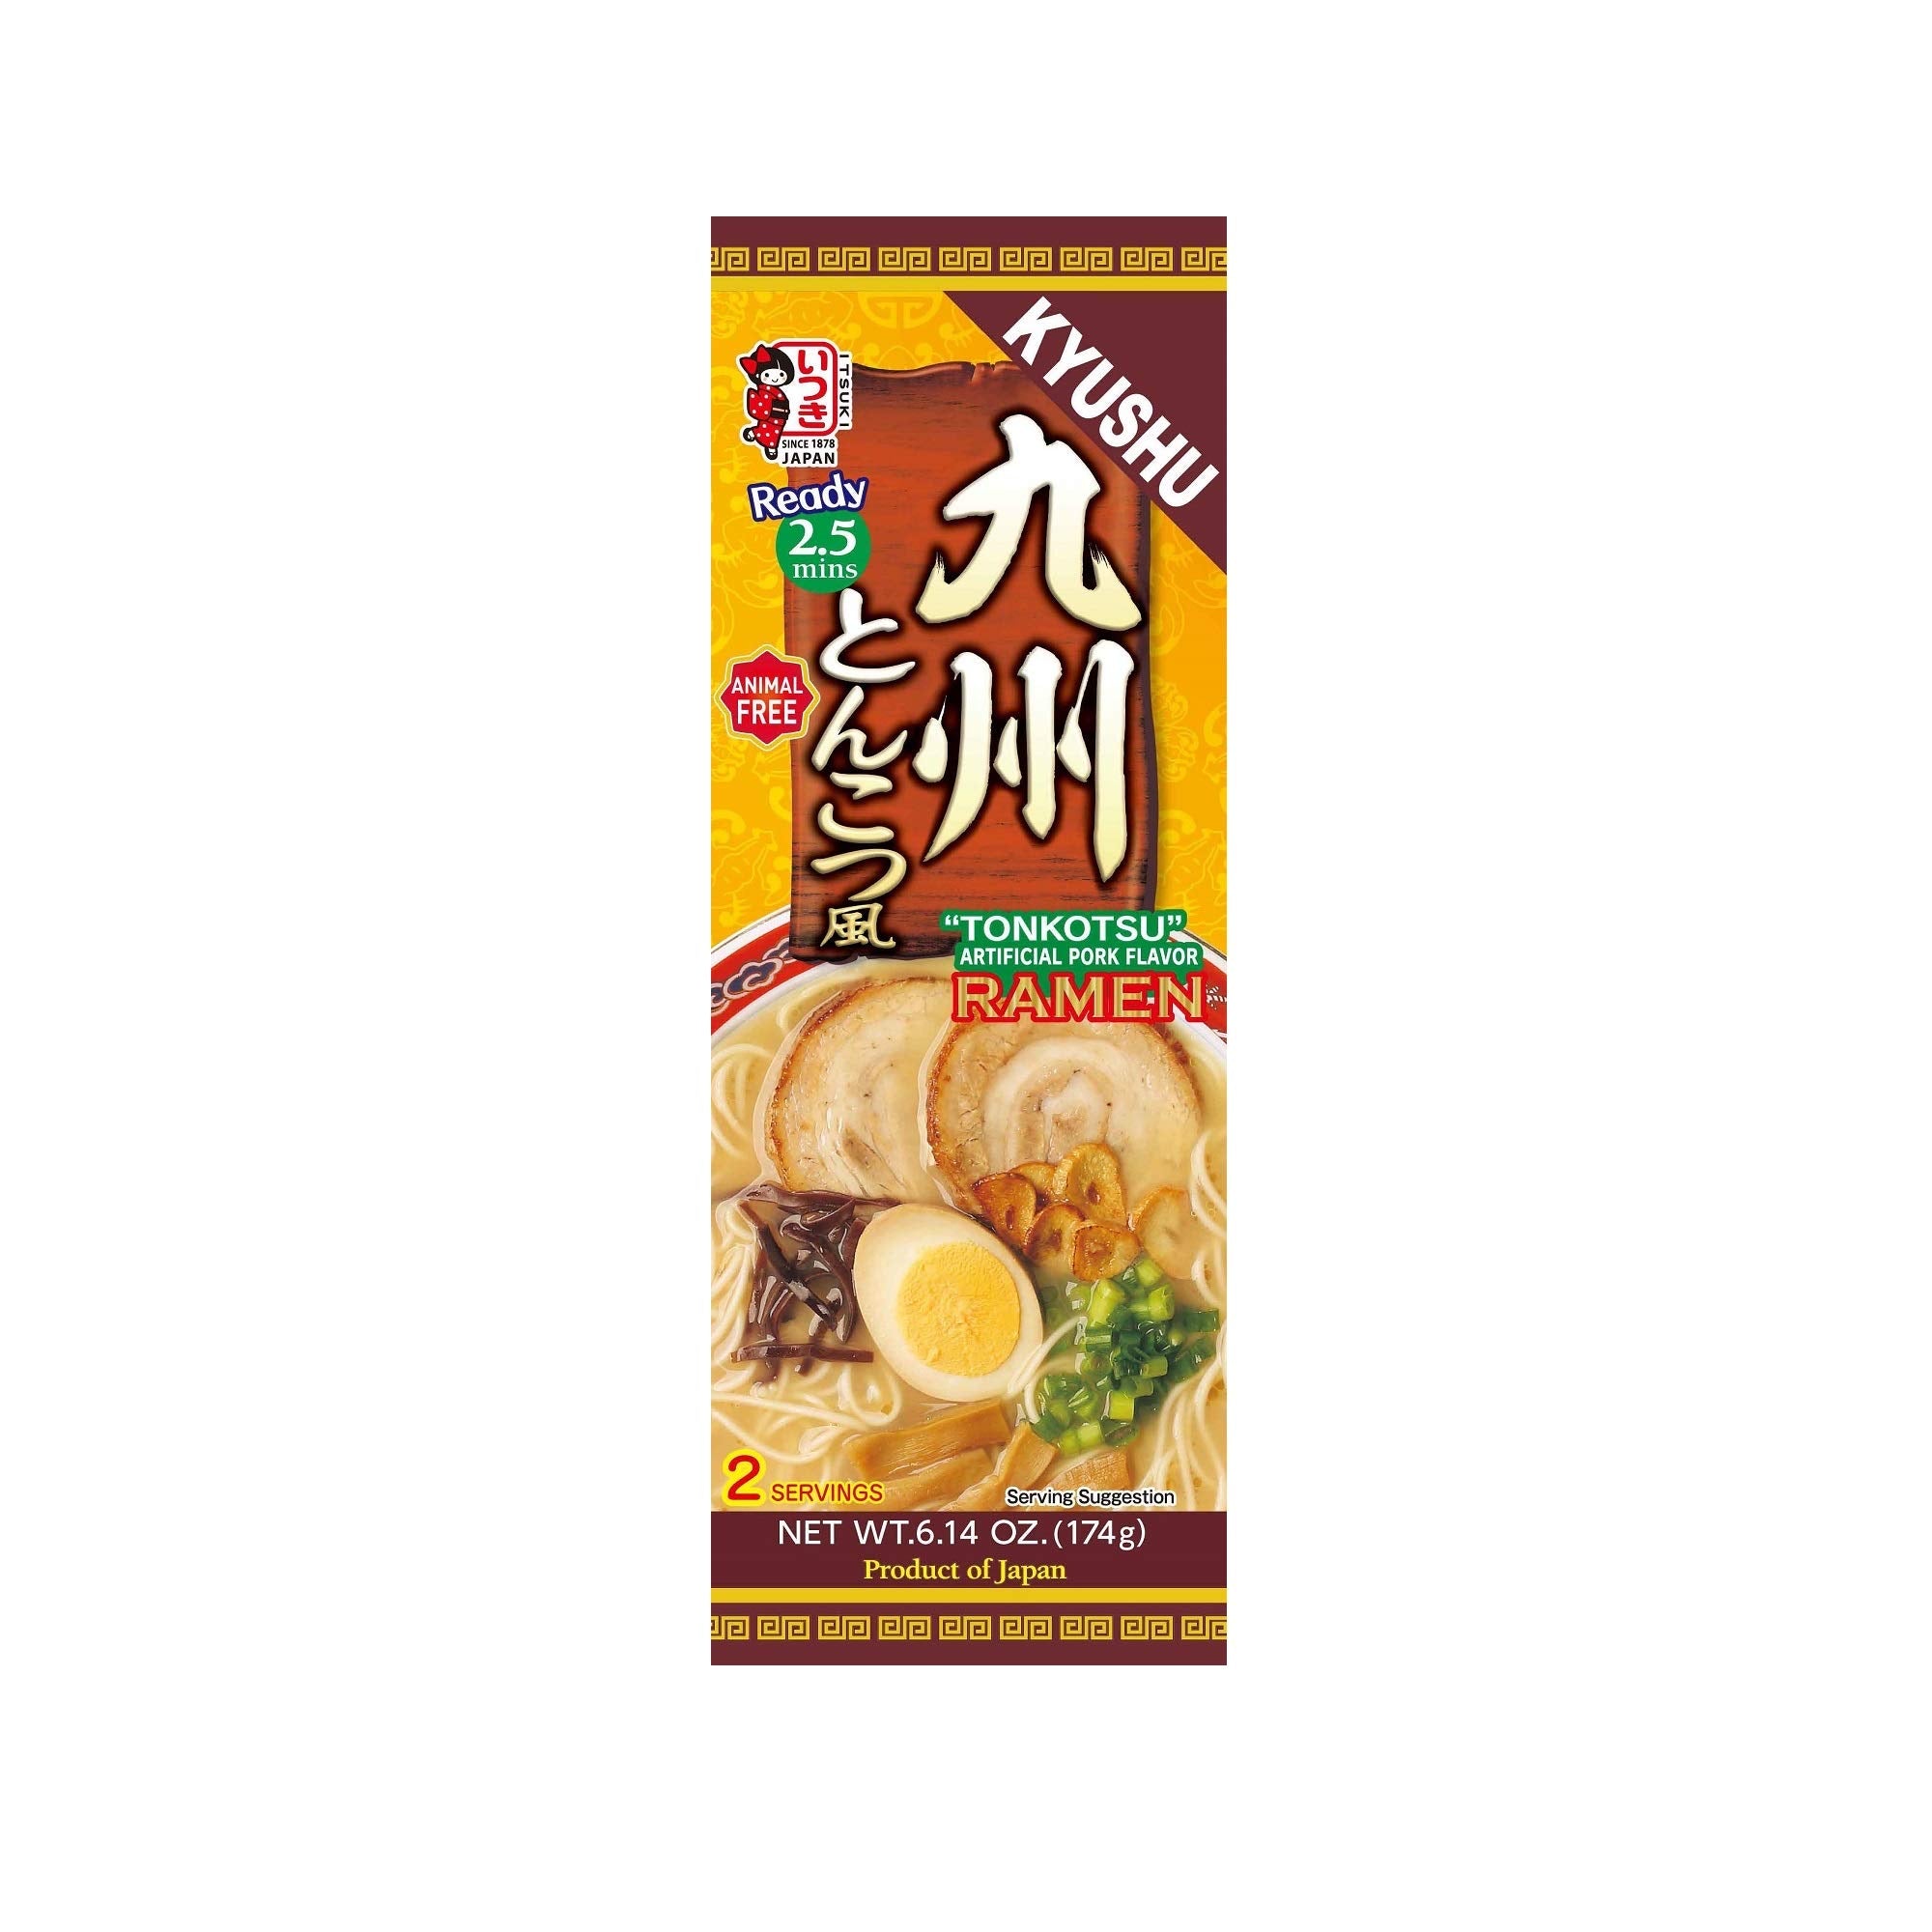 Itsuki Kyushu “Tonkotsu” Pork Ramen - 6.14oz/174g (2 Servings)